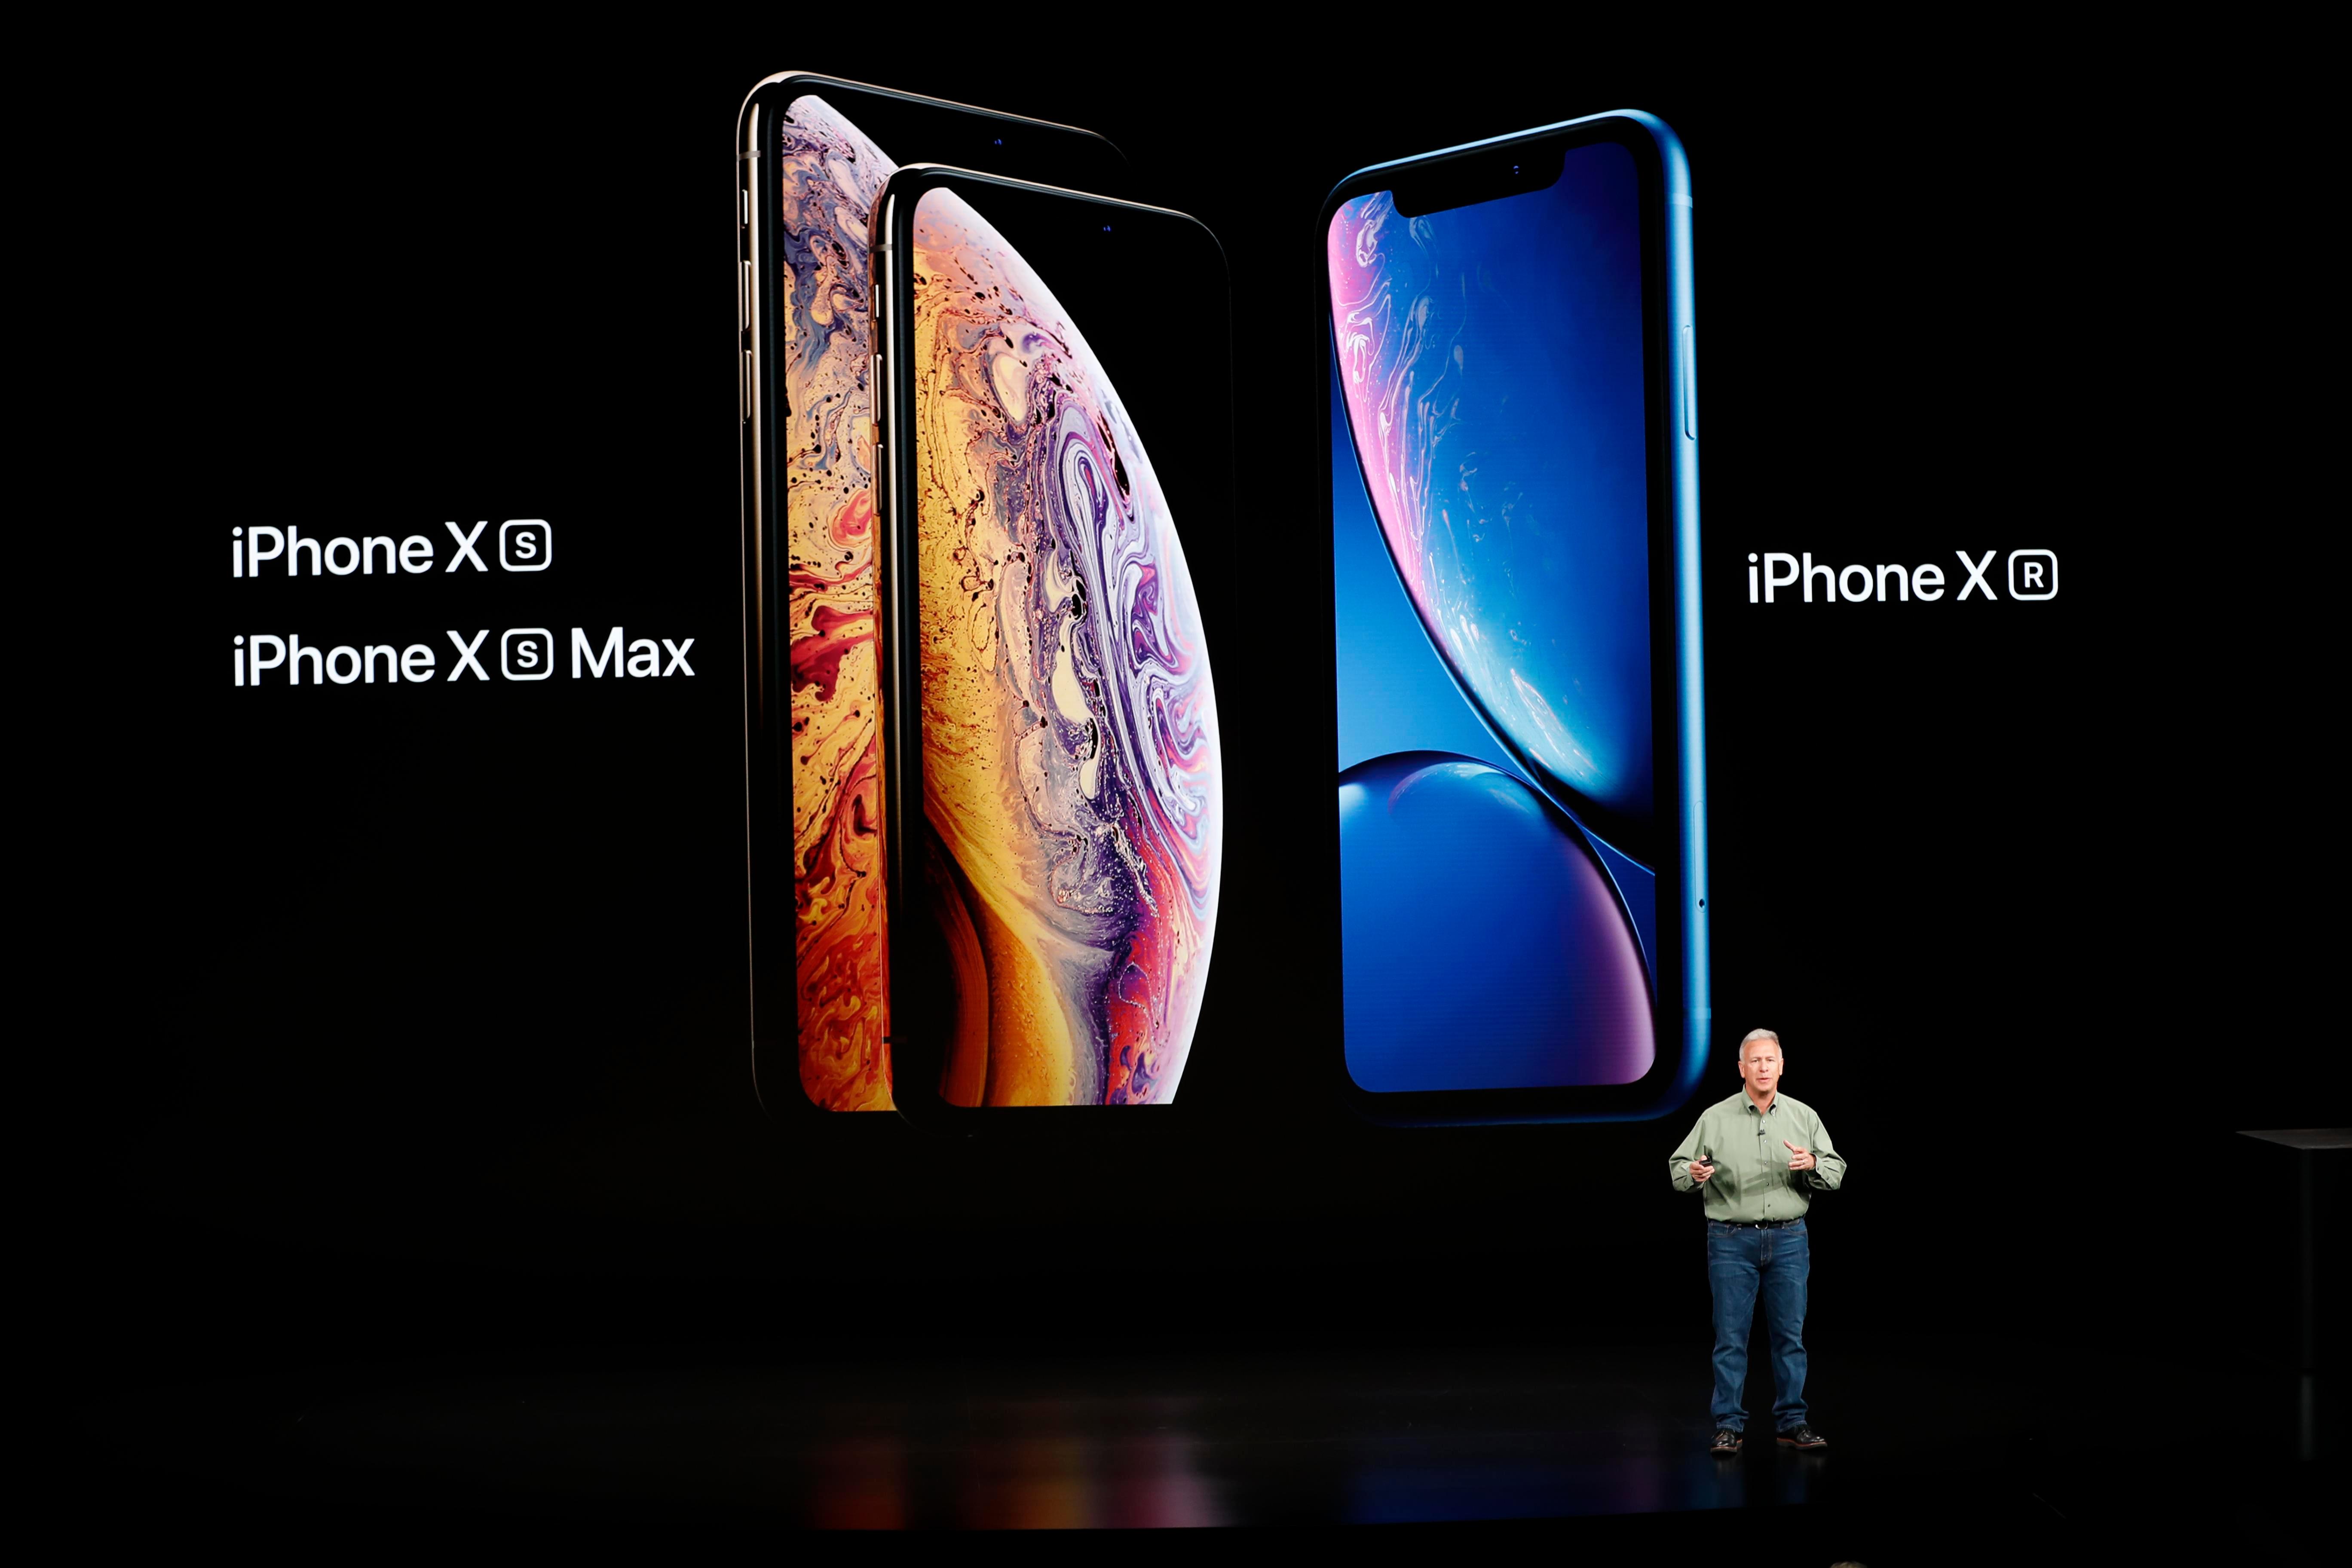     Förra året såg Apple Events tre nya iPhone-modeller